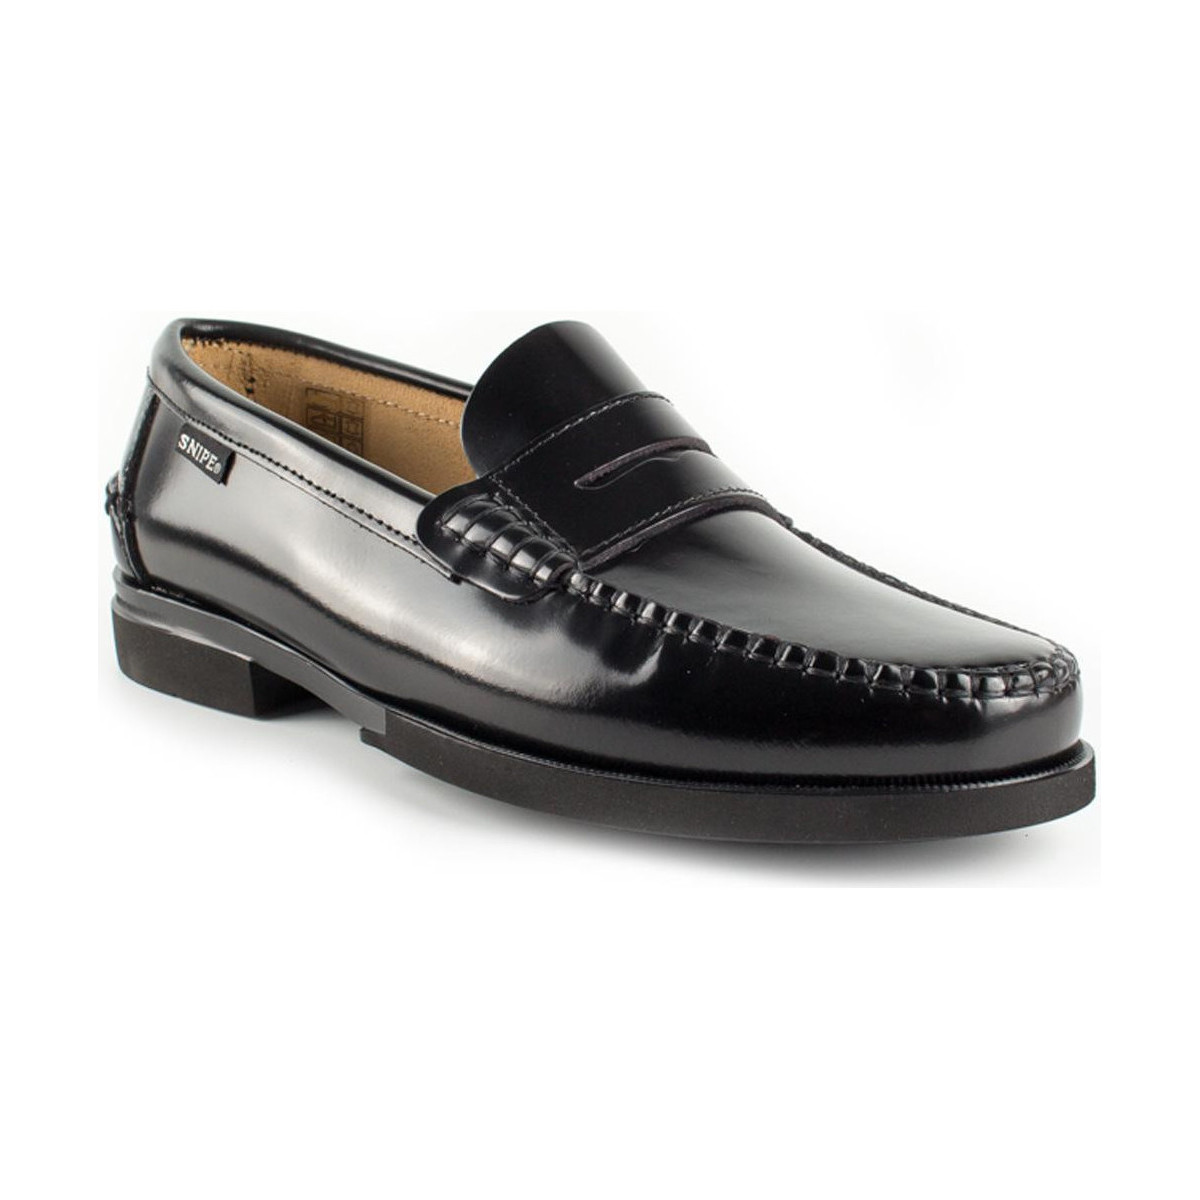 Sapatos Homem Sapatos & Richelieu Snipe 11023 Preto